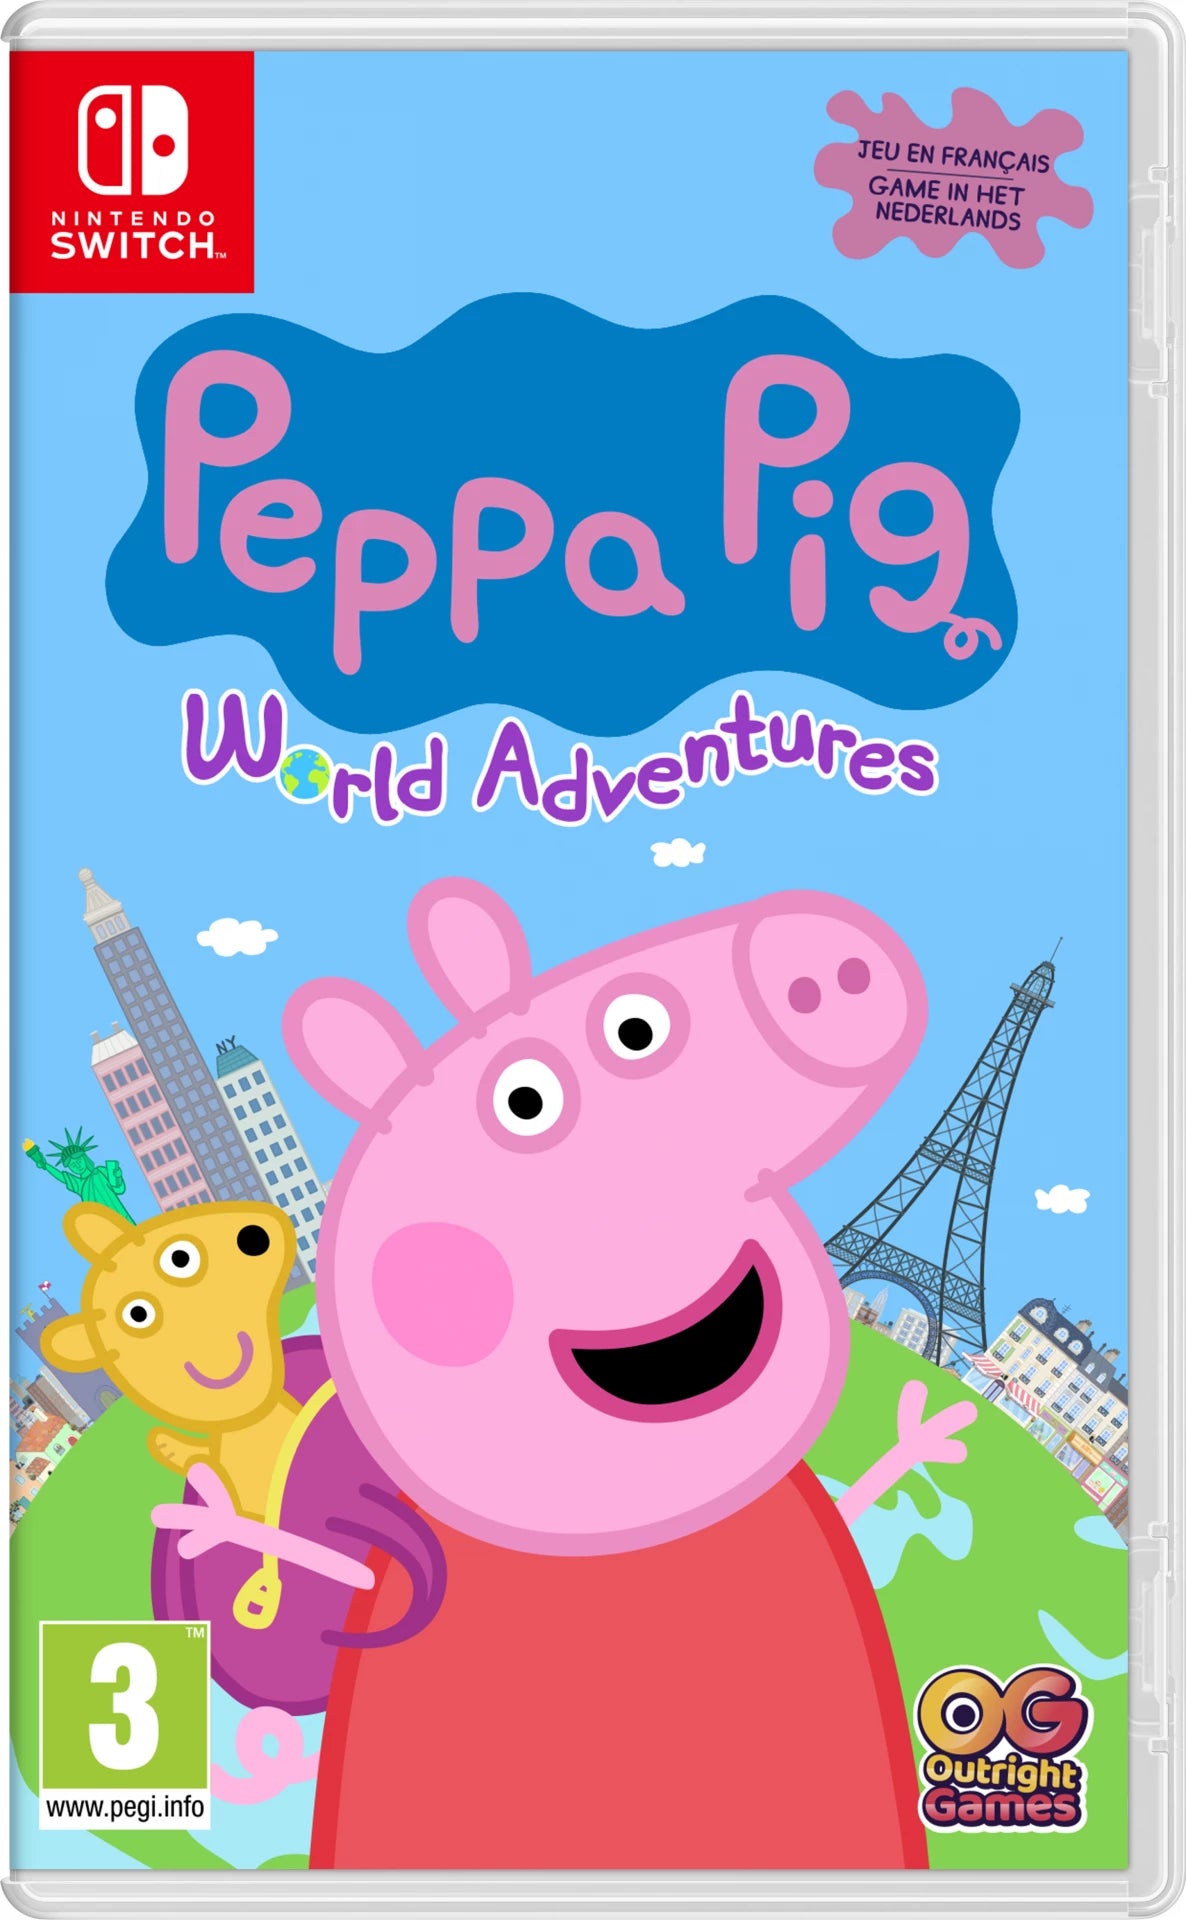 Peppa Pig: World Adventures Gamesellers.nl